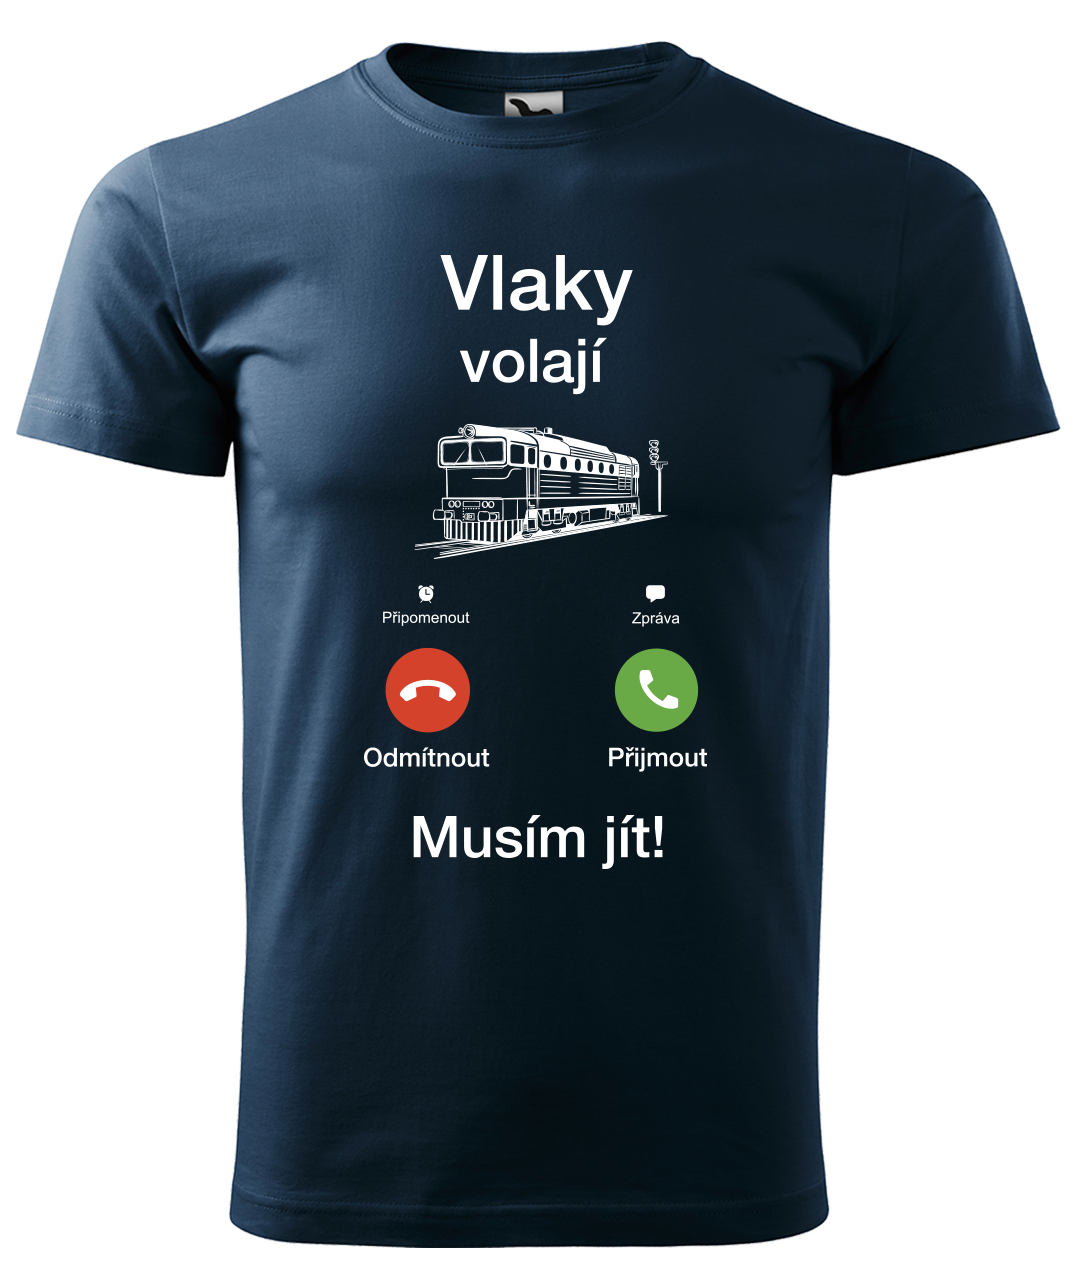 Dětské tričko s vlakem - Vlaky volají Velikost: 4 roky / 110 cm, Barva: Námořní modrá (02)